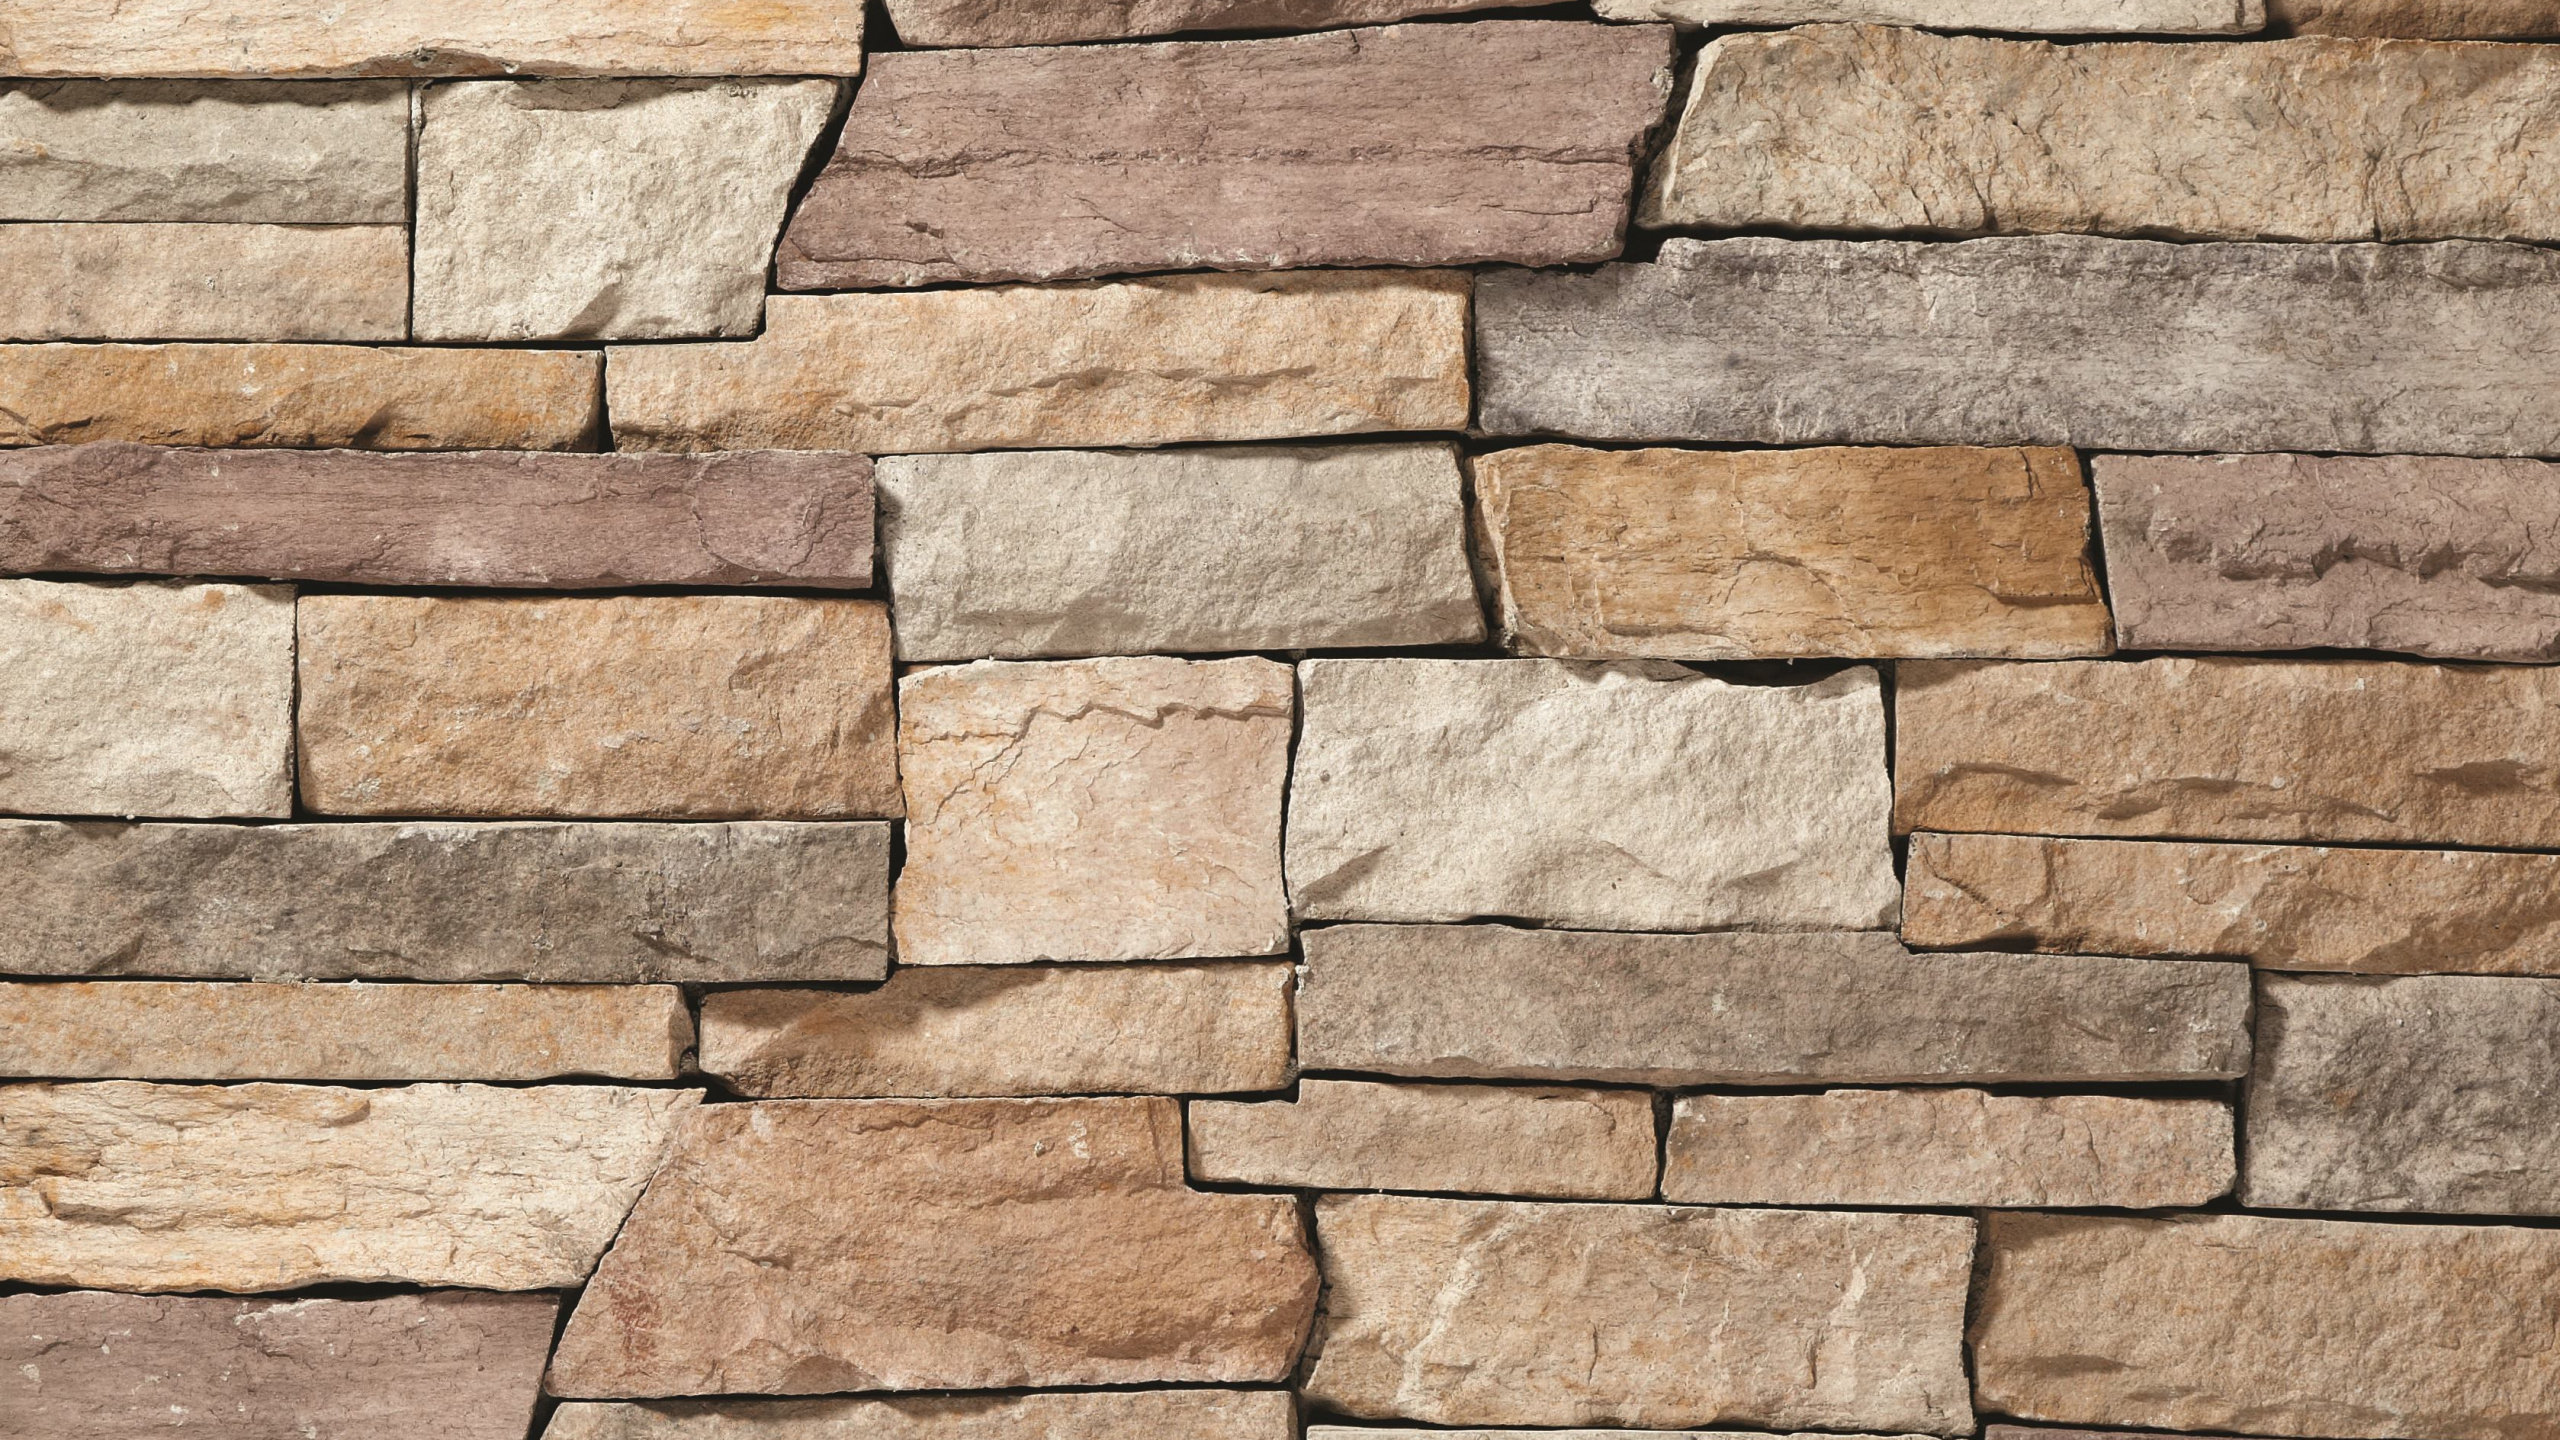 石壁, 砖石, 砌砖, 砖, 石饰面 壁纸 2560x1440 允许